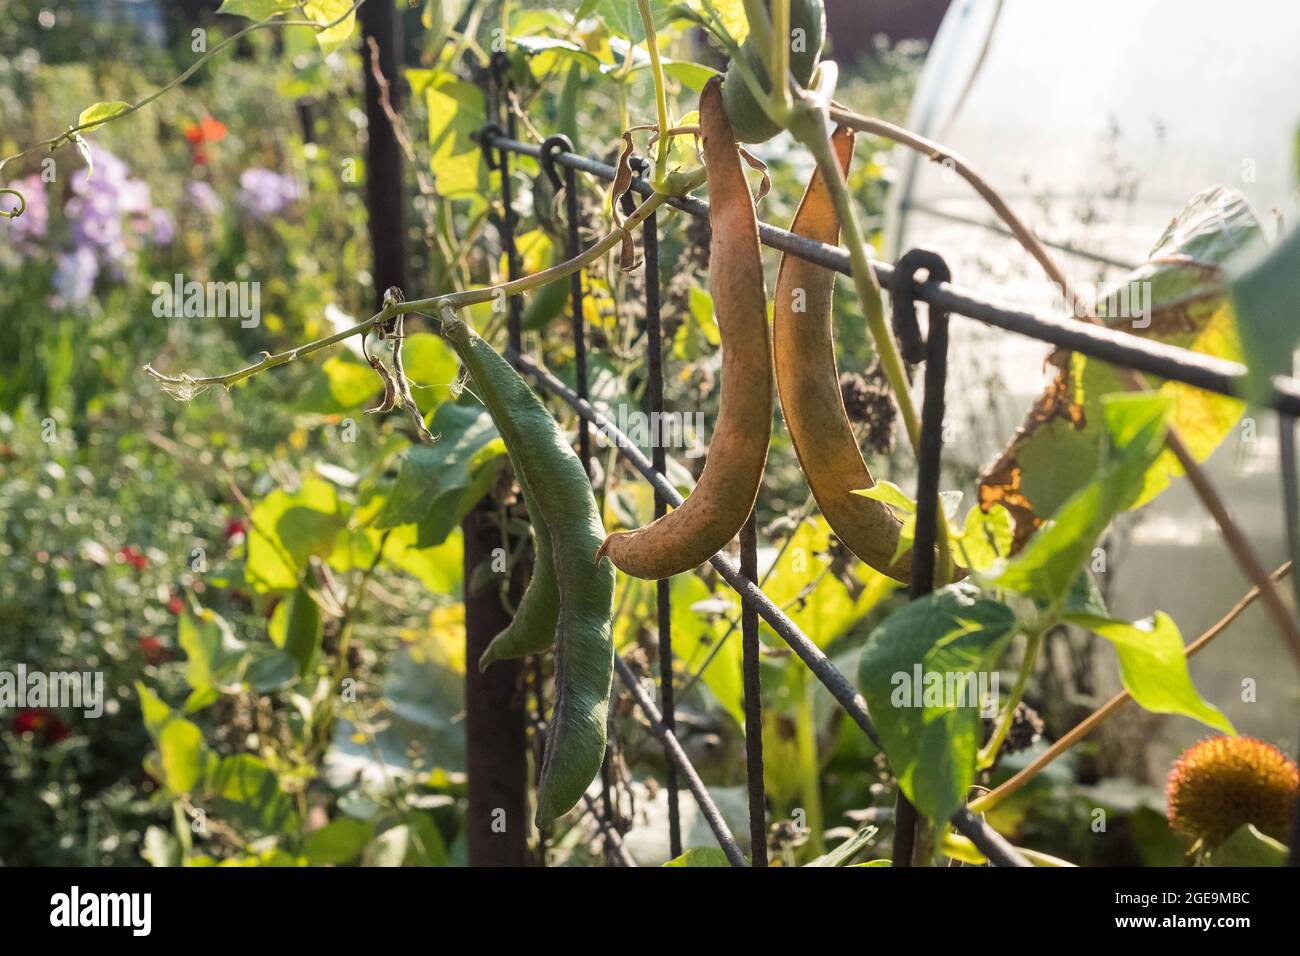 Im Gemüsegarten wachsen PEA-Hülsen. Herbstpflanzen. Unscharfer Hintergrund. Stockfoto